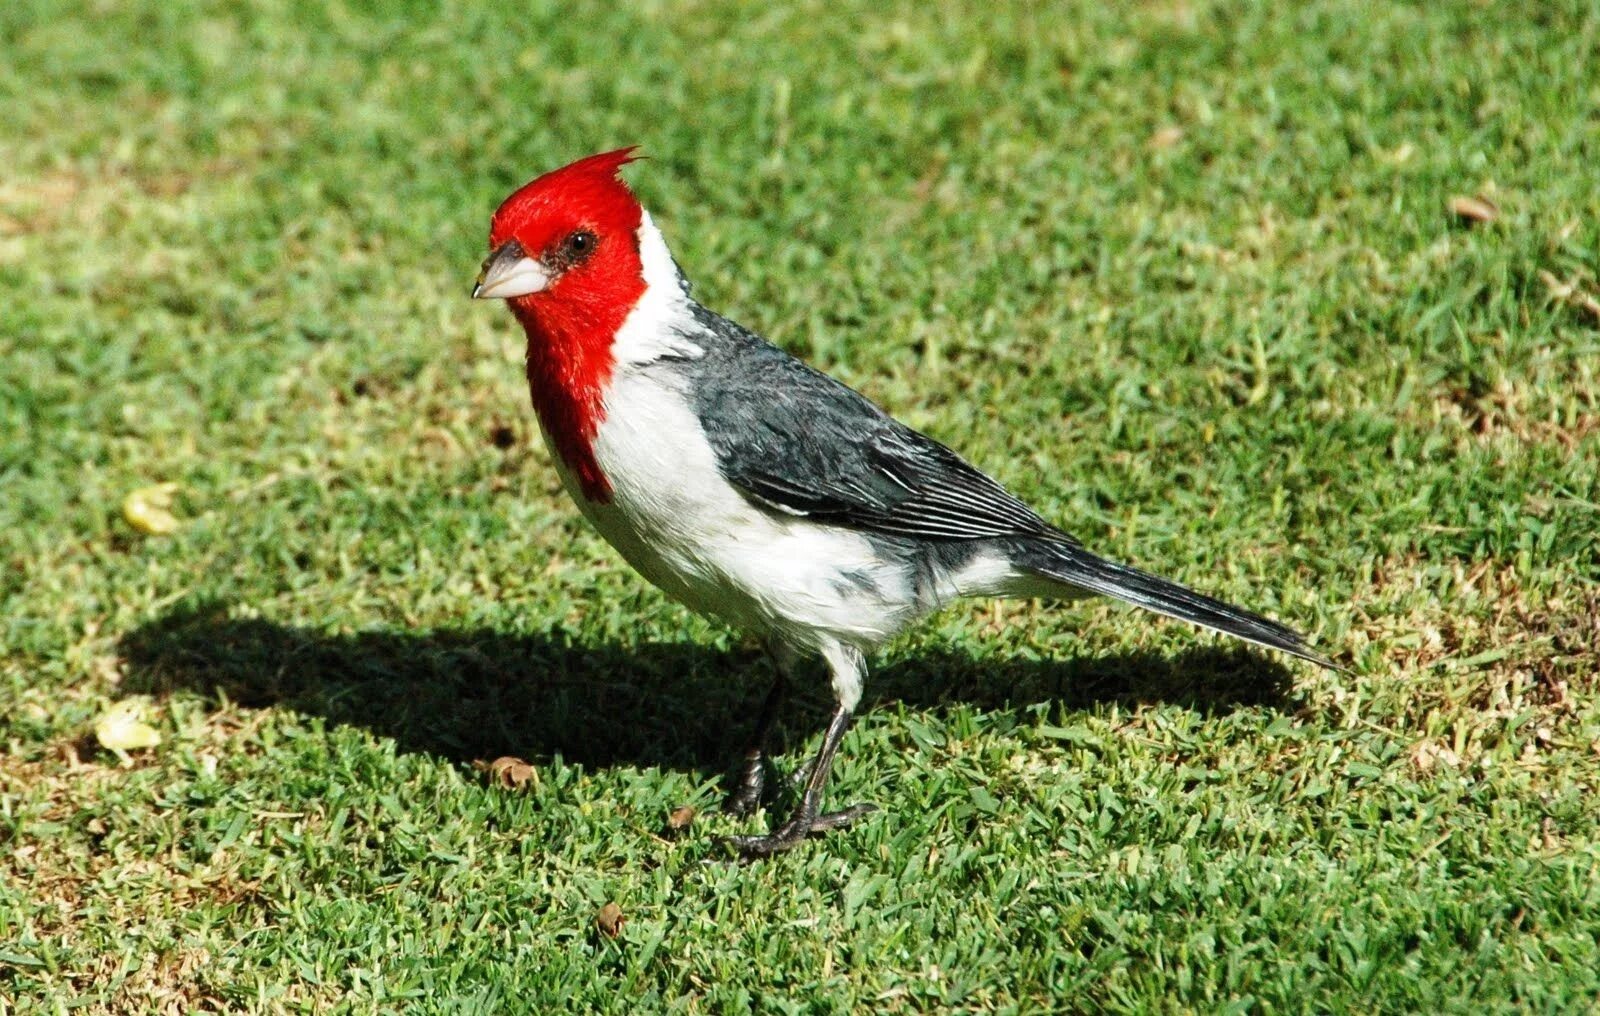 The bird of us. Птица Кауаи э-э. Птицы Гавайских островов. Чешуегорлый Мохо птица. Гавайи птичка с красной головой.